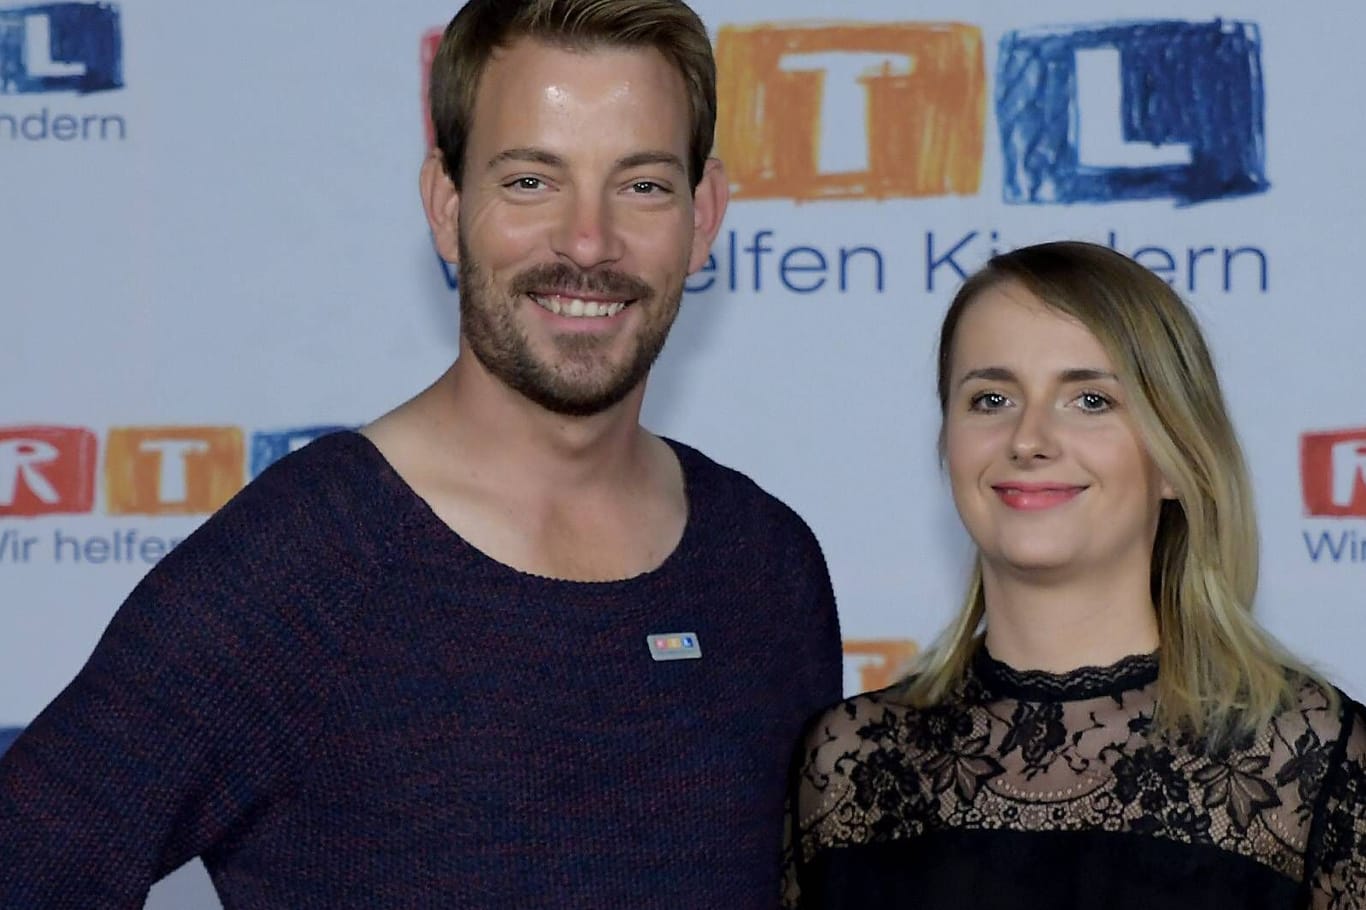 Gerald und Anna Heiser: Sie lernten sich 2017 in der RTL-Show "Bauer sucht Frau" kennen.